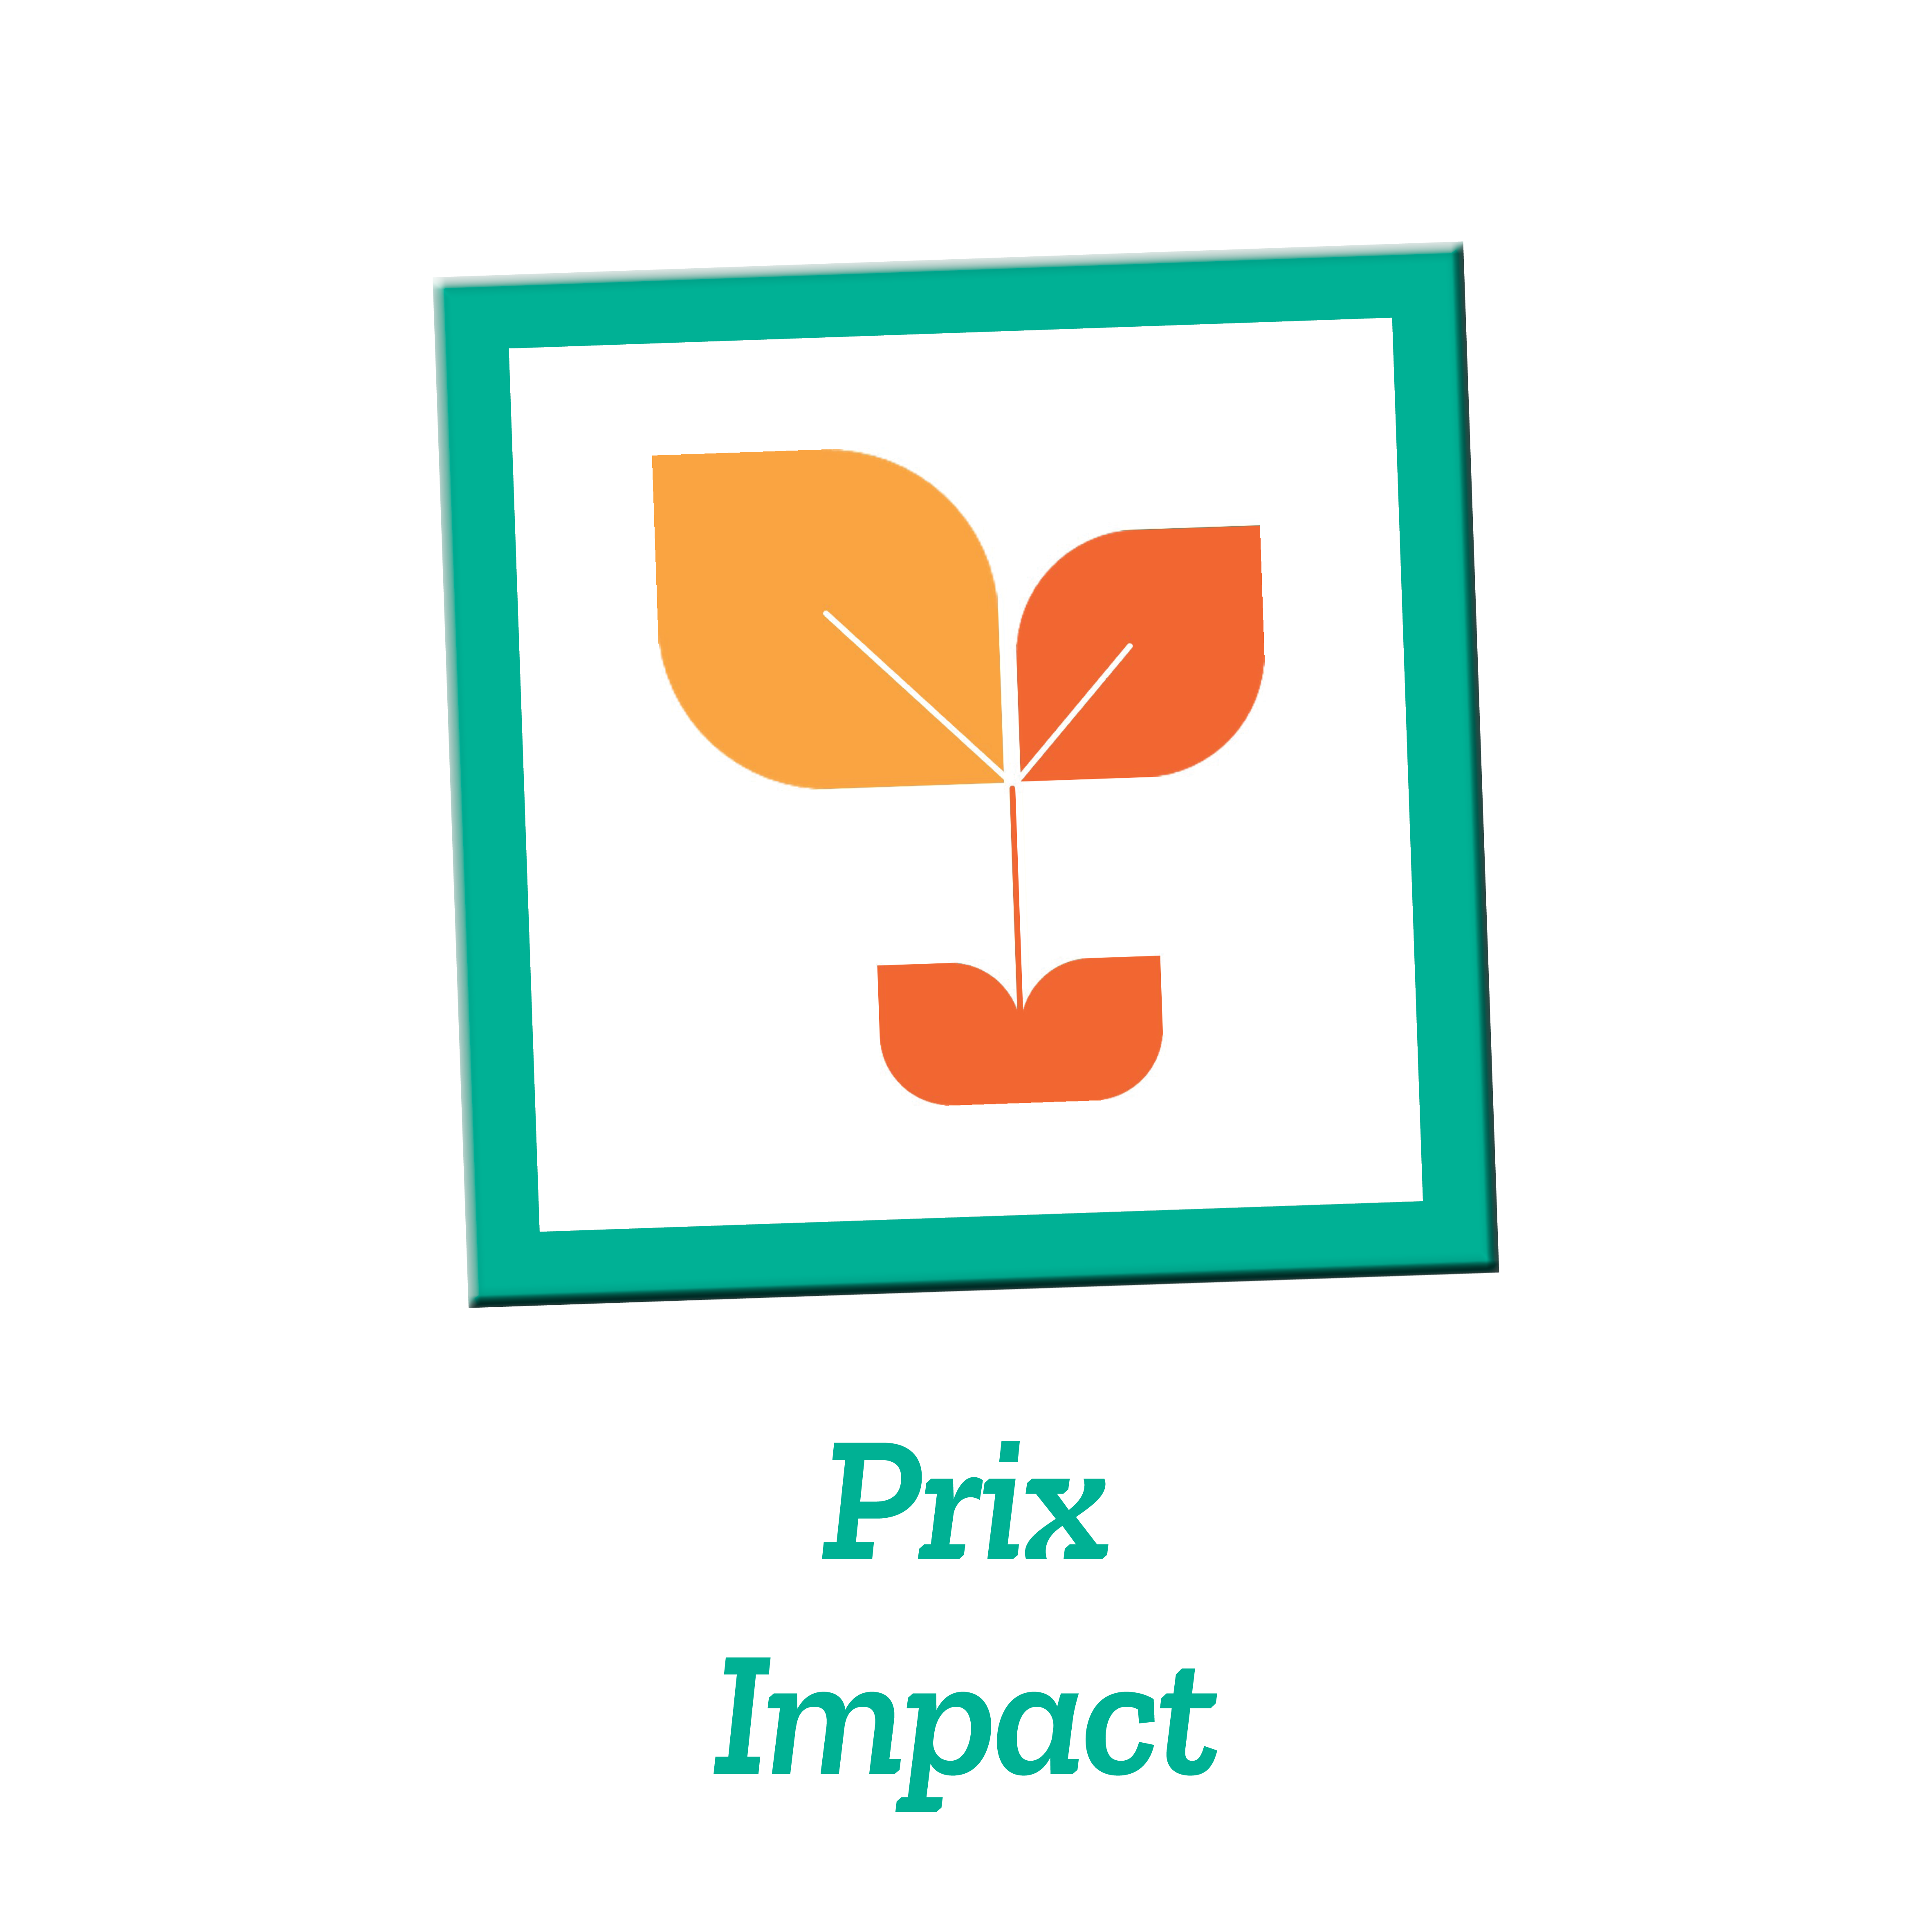 Picto_Prix_Impact_iof_2020.png